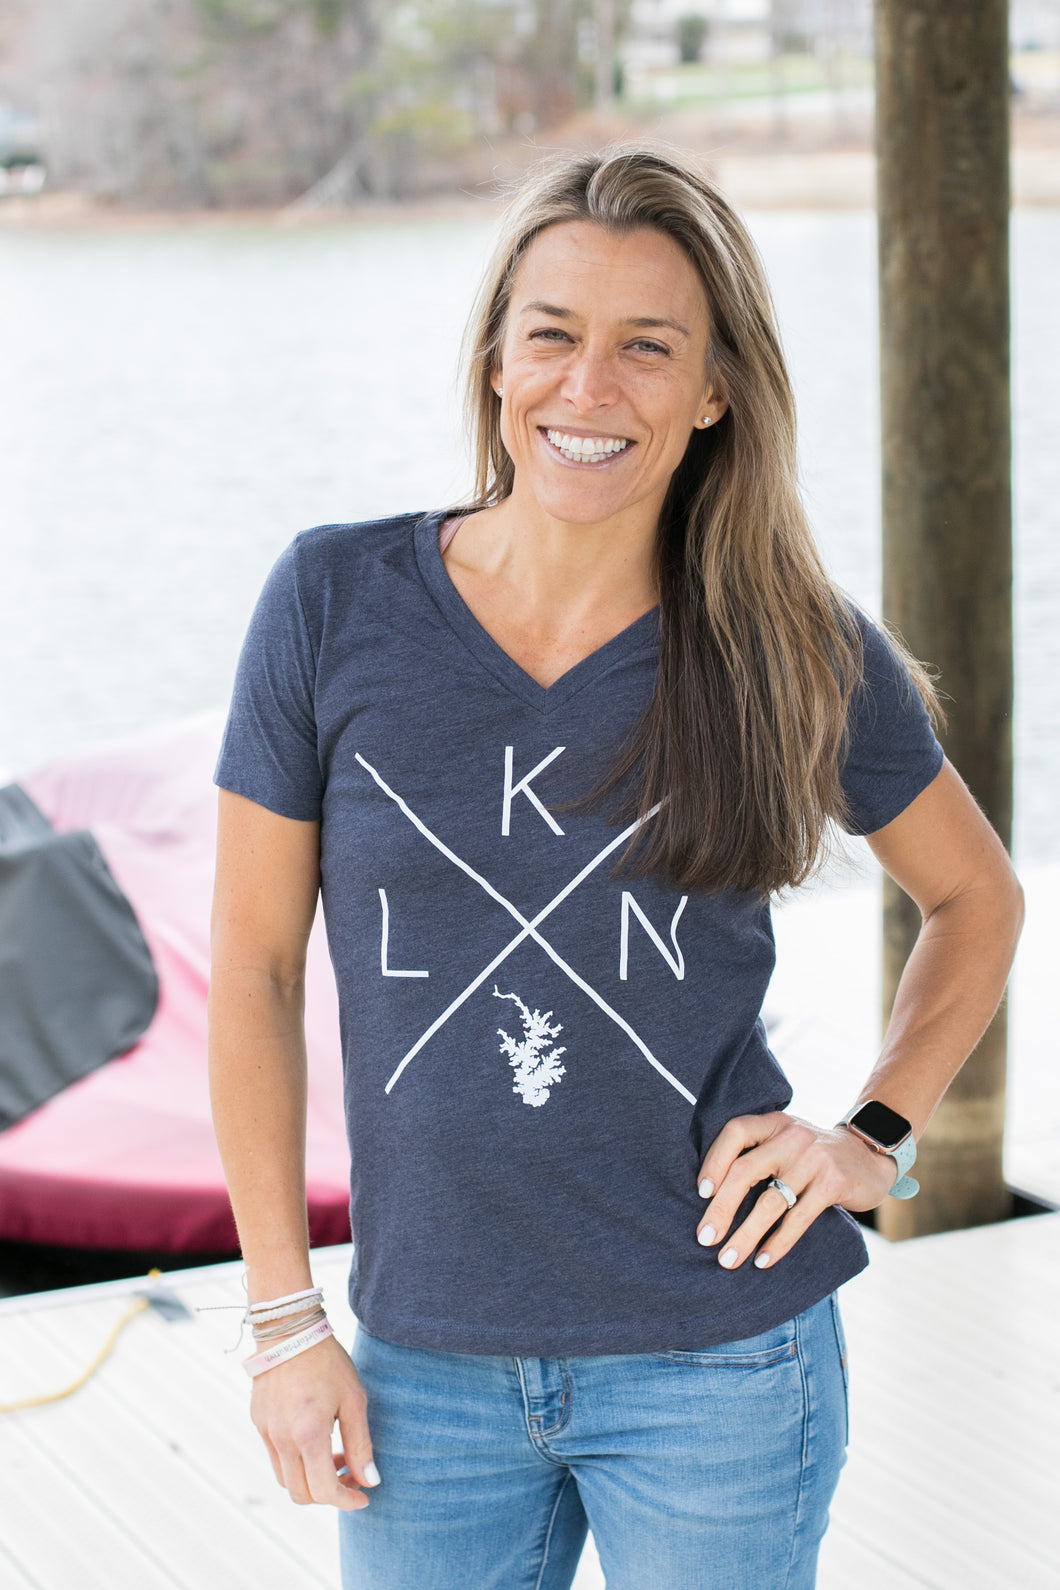 LKN Lake T-Shirt - Women's Relaxed V-neck